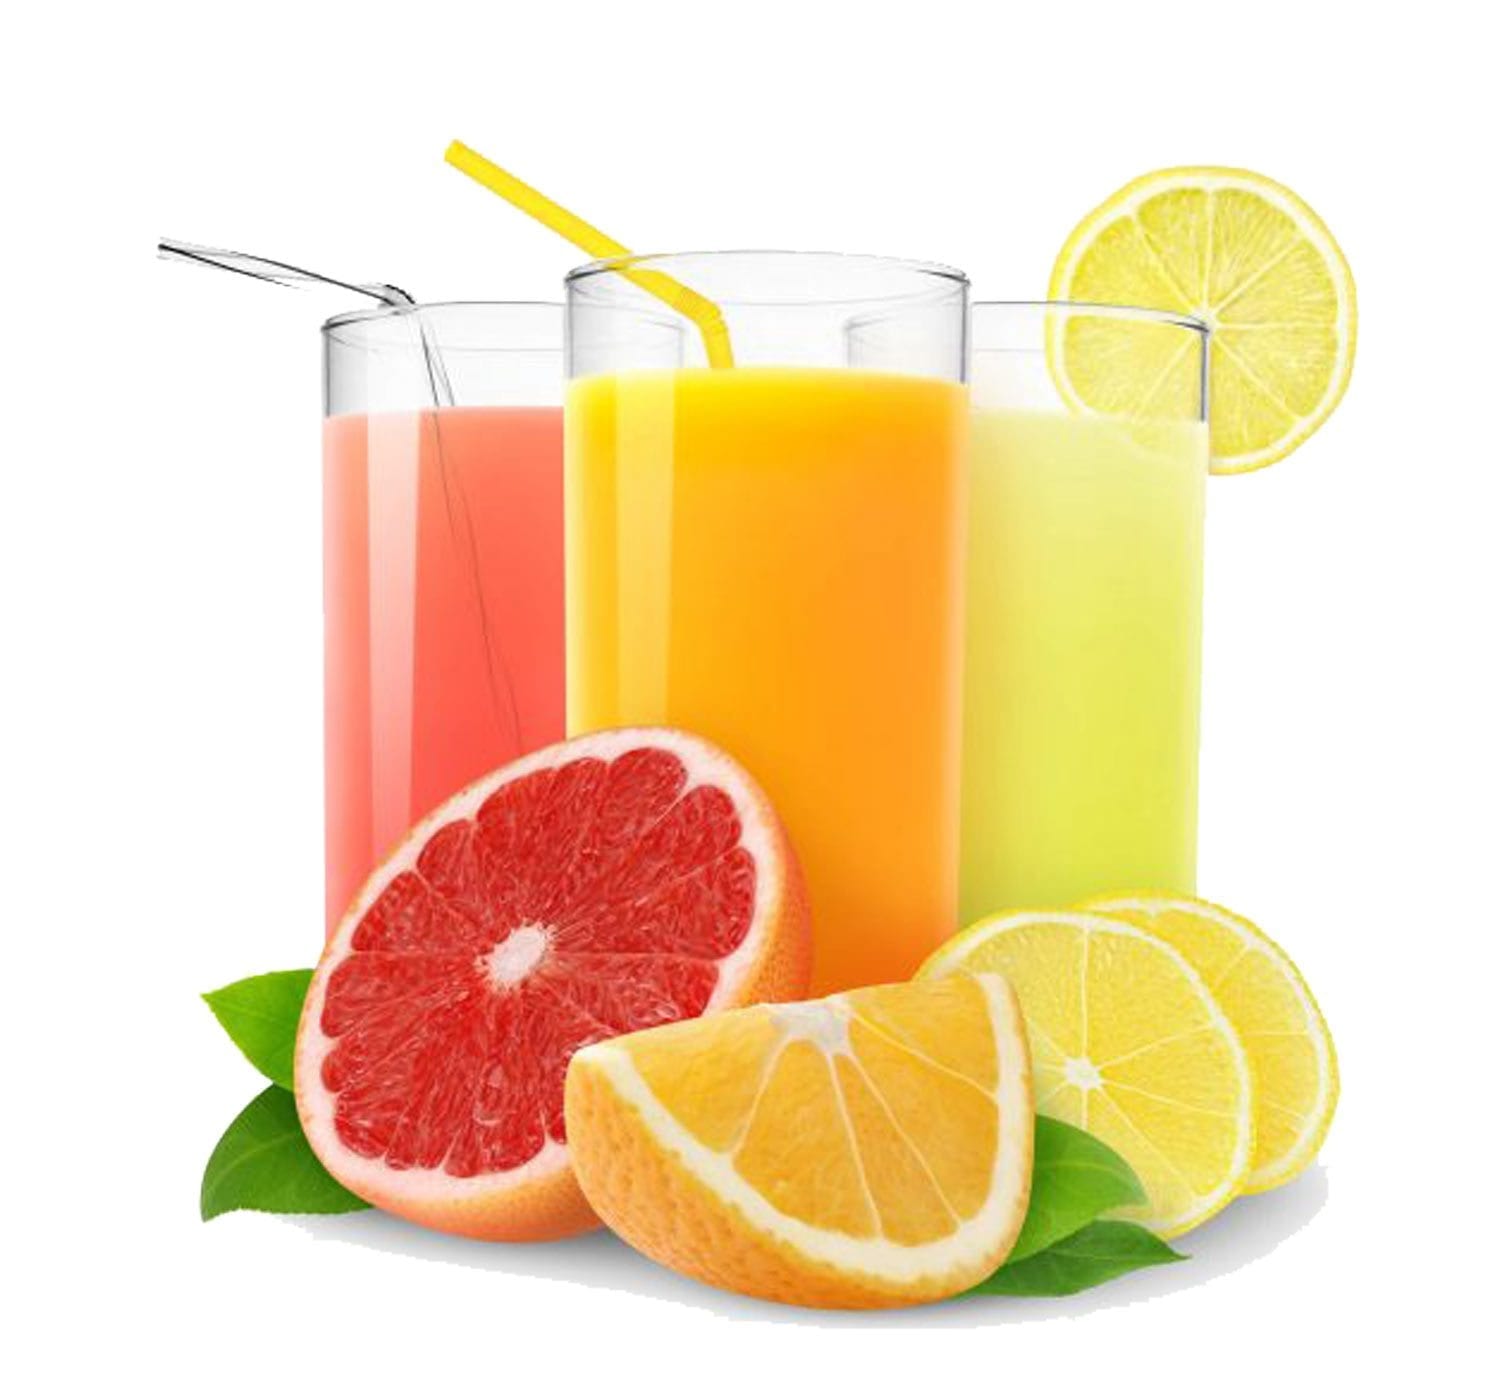 Various natural fruit juices